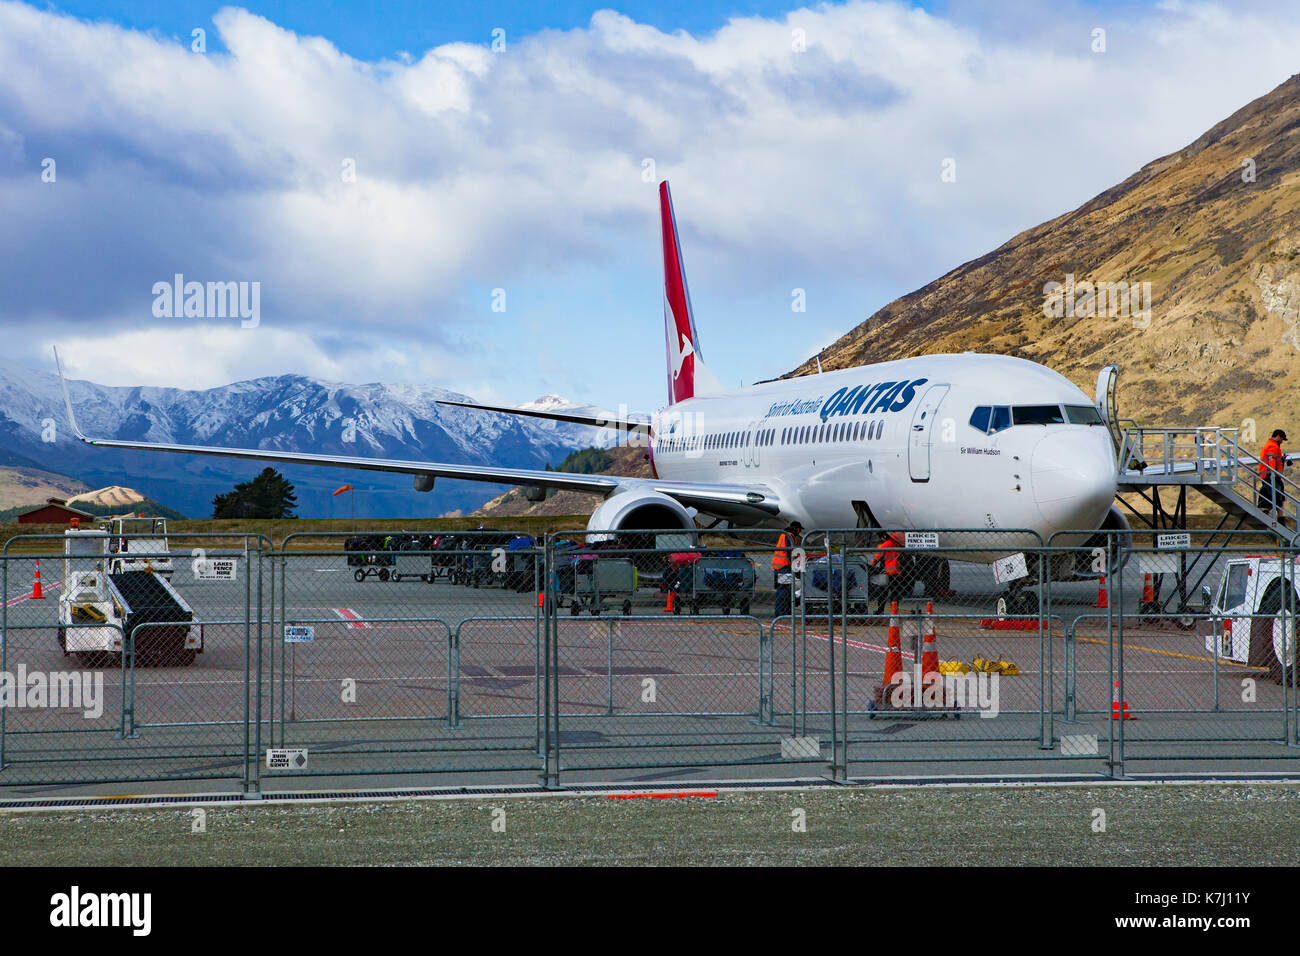 Queenstown Nouvelle Zelande - septembre6,2015 : compagnie aérienne Qantas avion passager chargement appartenant à l'aéroport de Queenstown Nouvelle-Zélande des terres du sud Banque D'Images